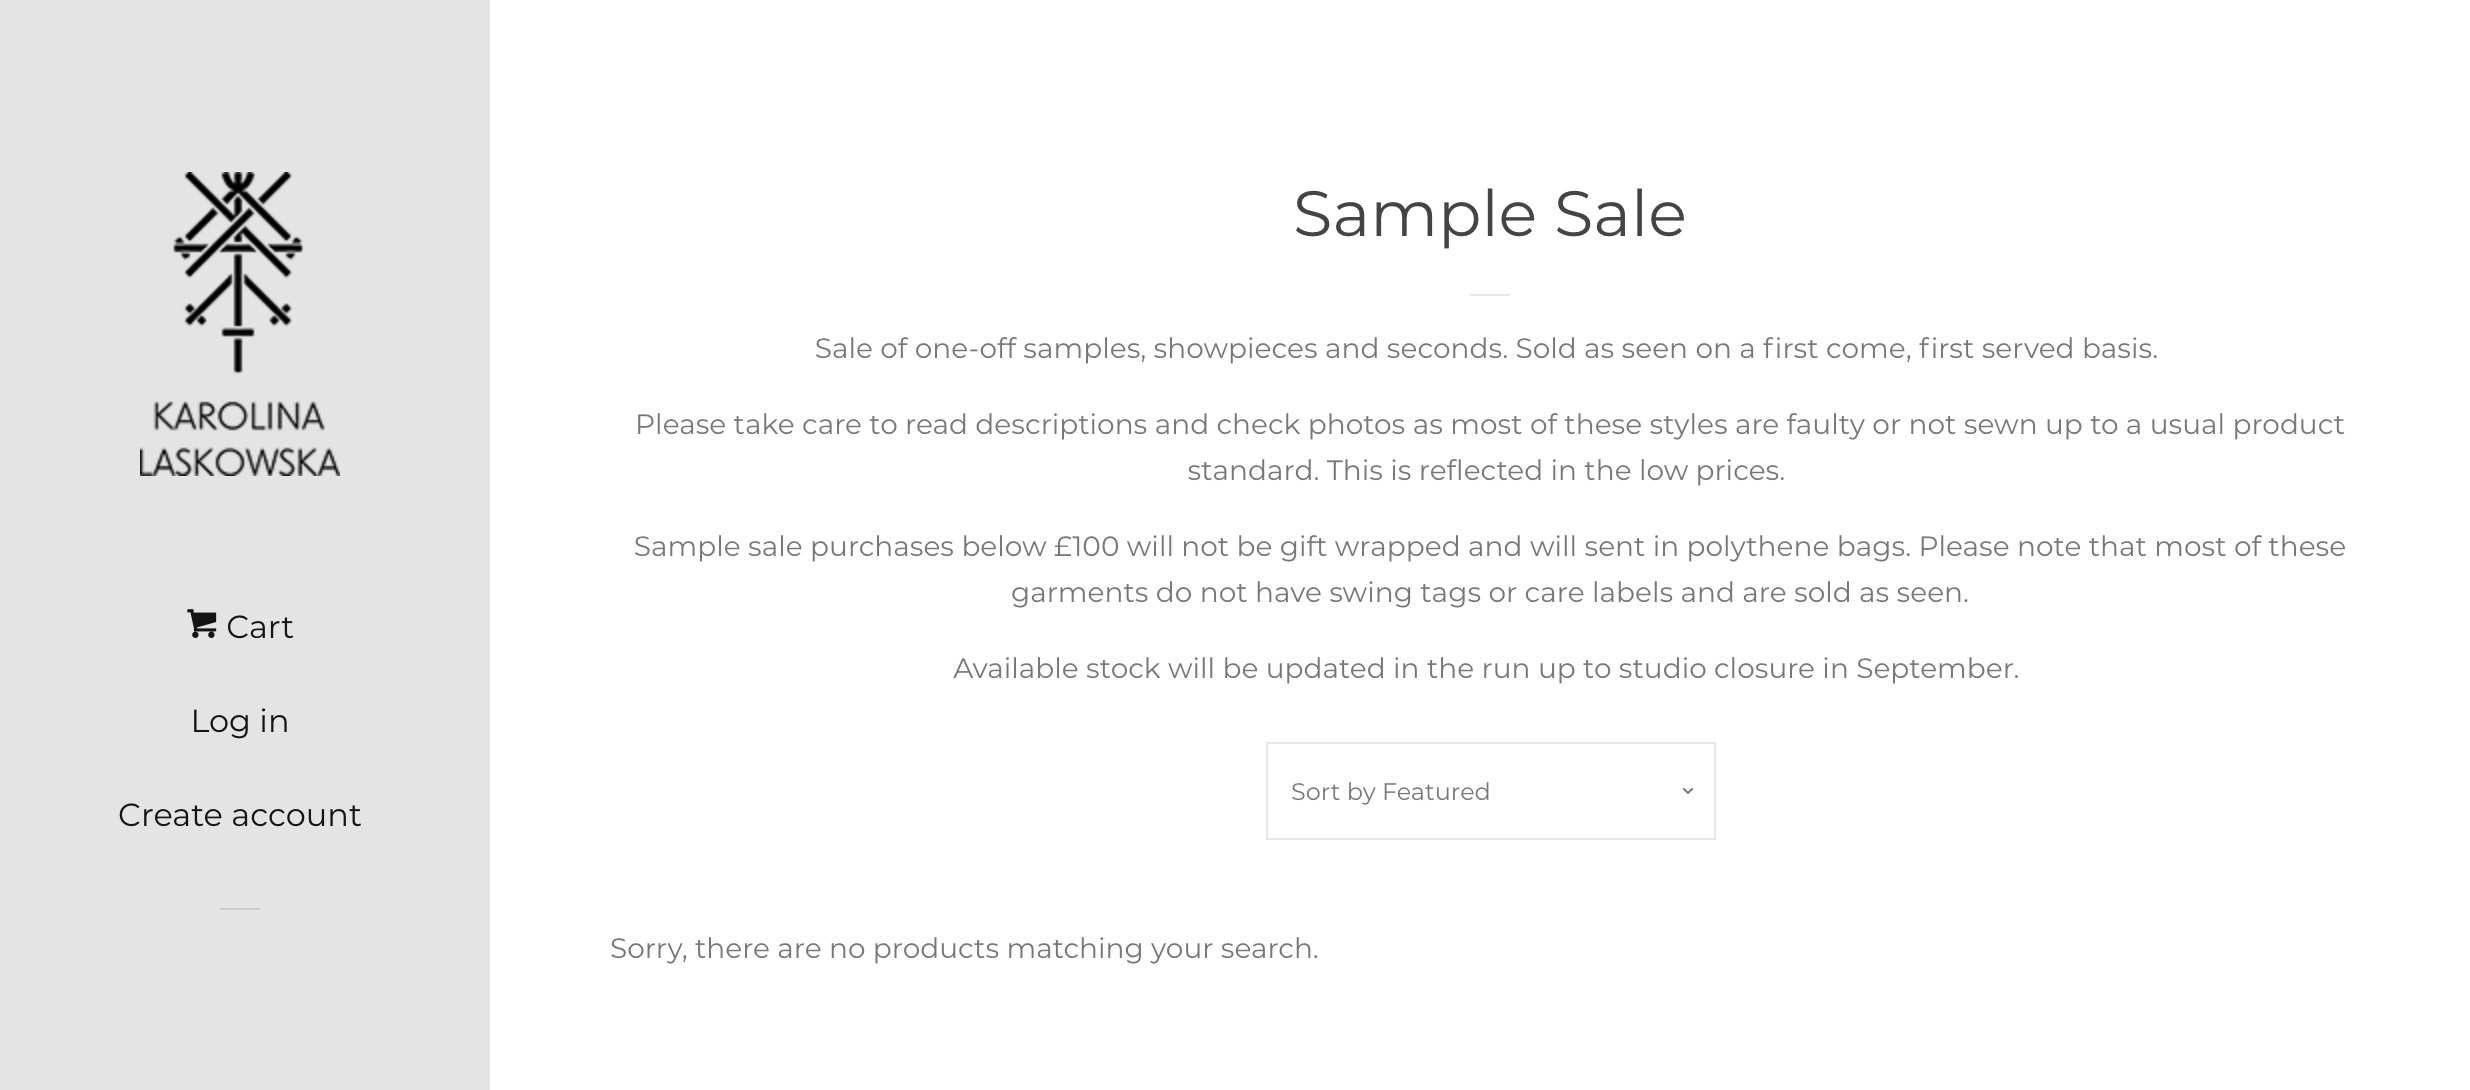 [Вопрос] Что такое распродажа сэмплов (Sample Sale)